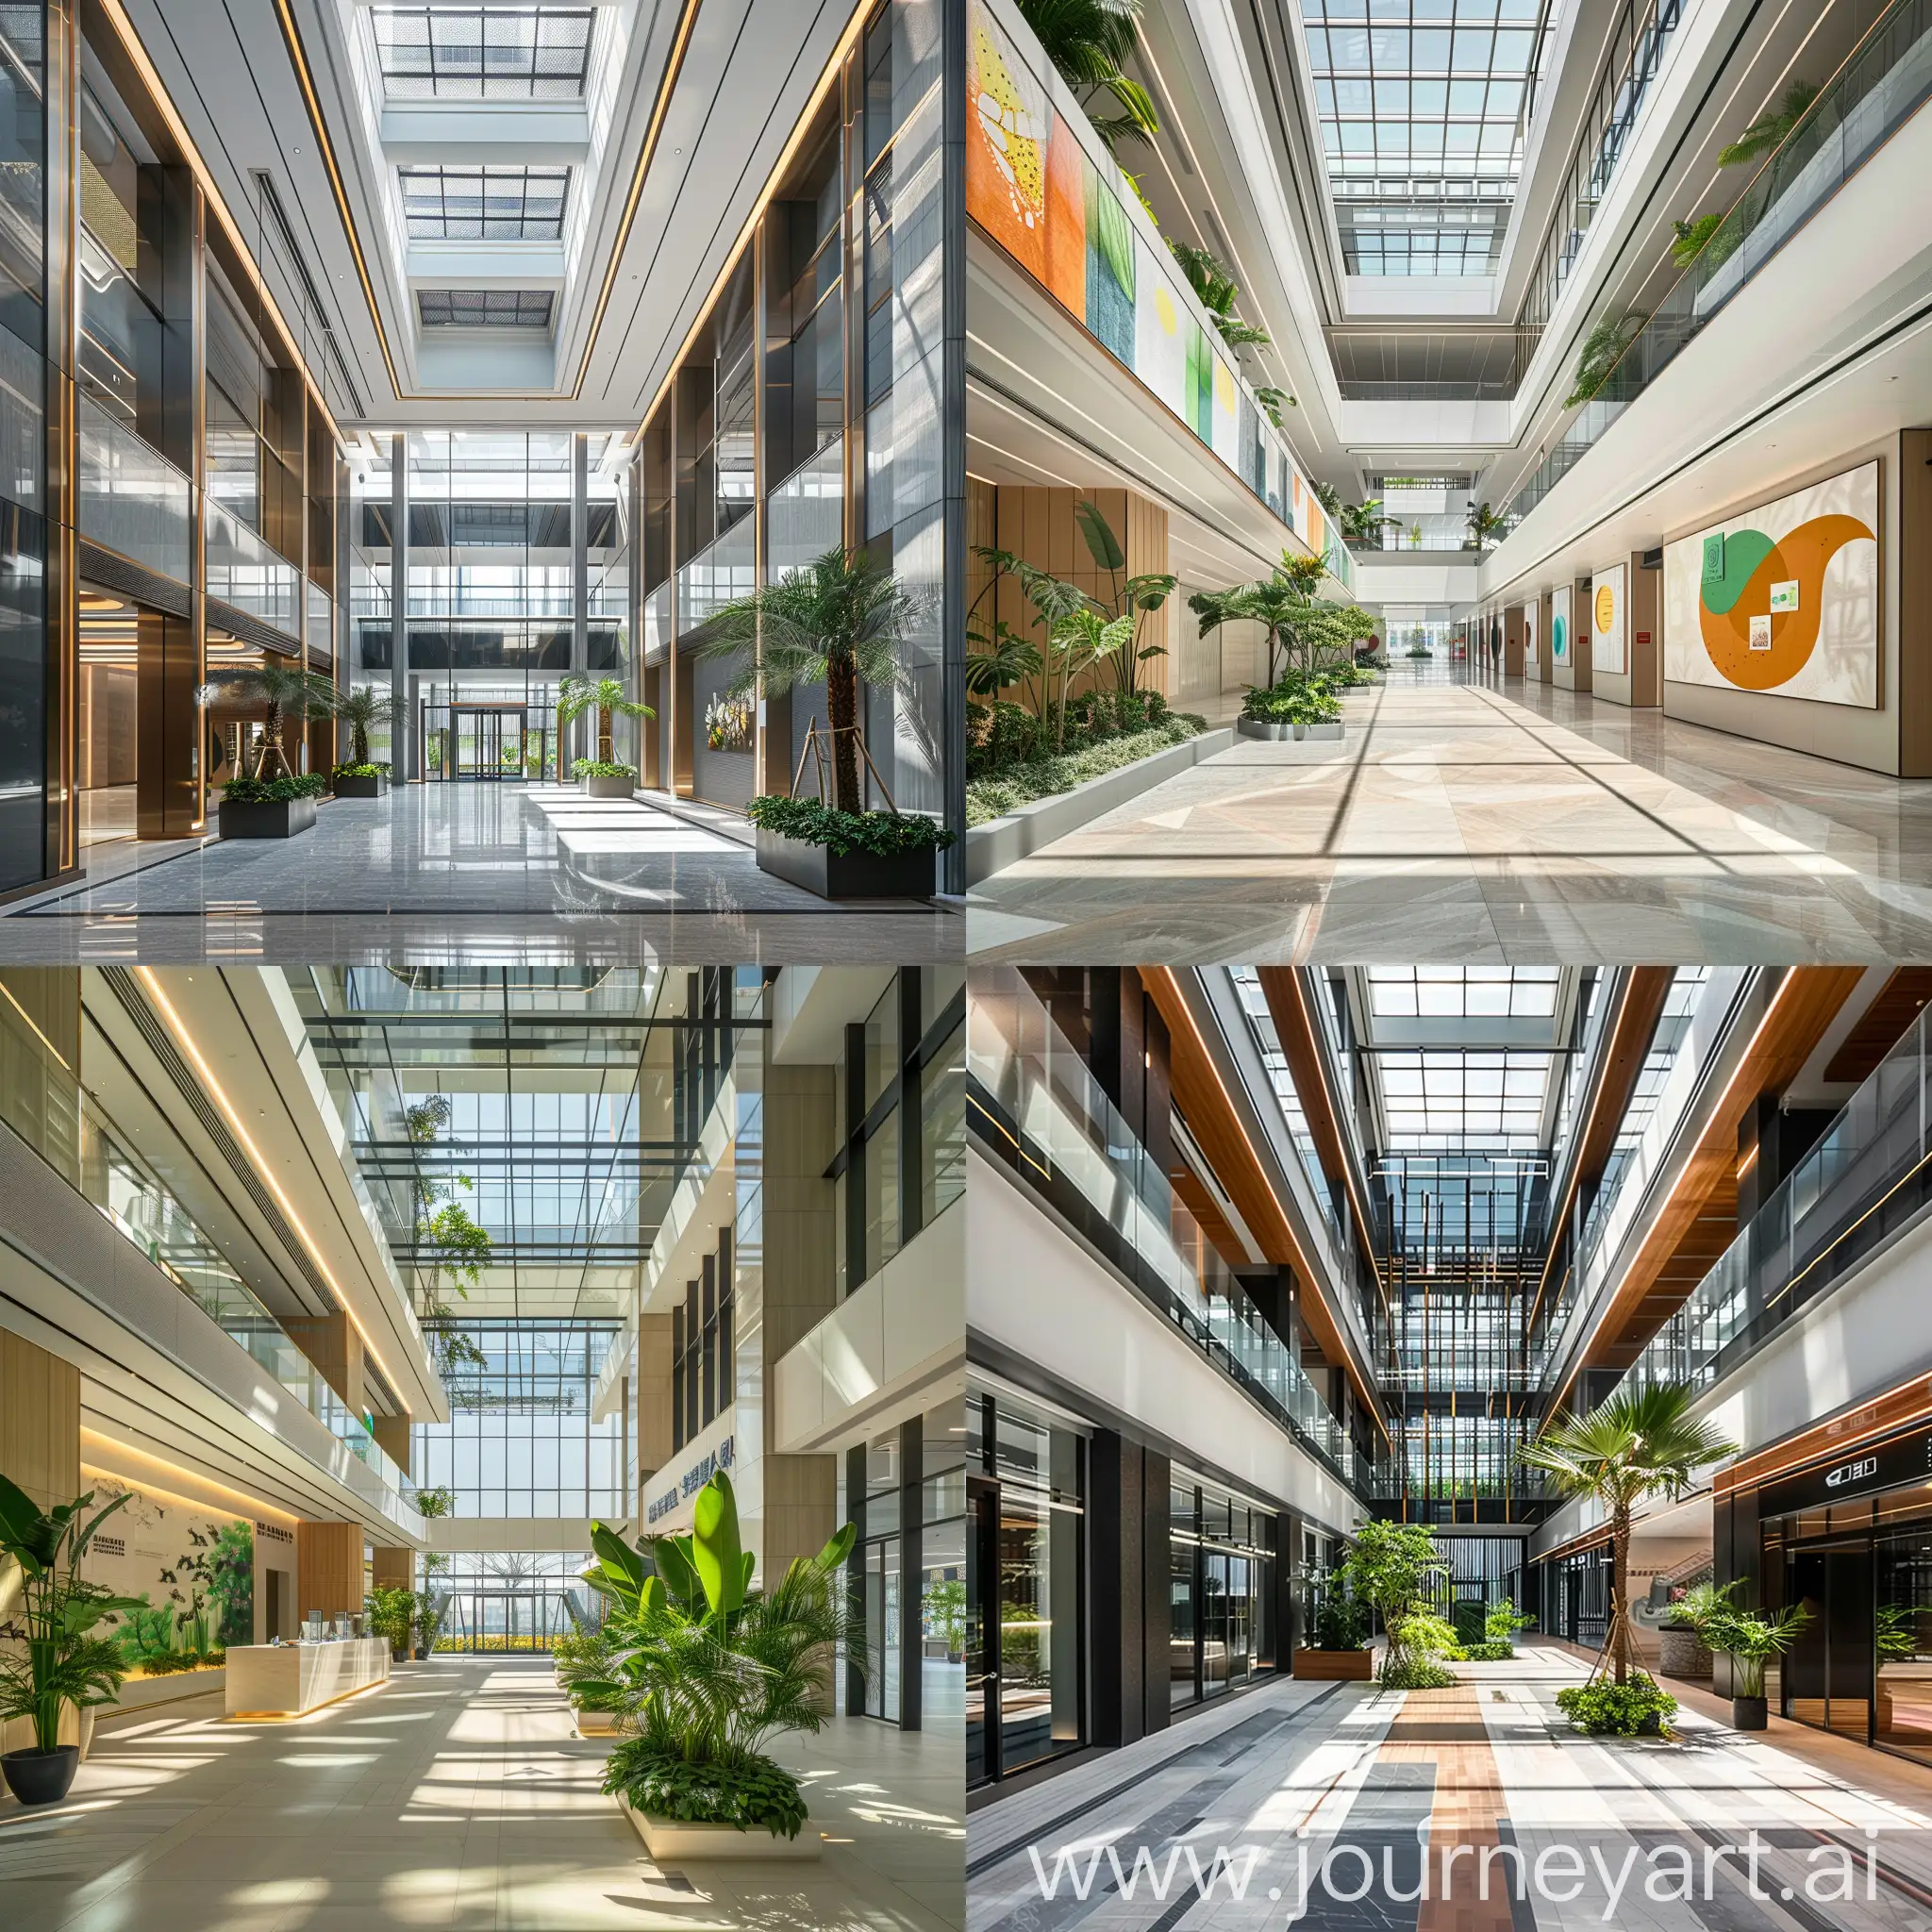 一个在海南三亚的5A级的办公楼的挑空大堂
设有有效连接内/外部
利用自然阳光
清楚的标识和导航
美化环境，加入艺术品
地面瓷砖，墙面瓷砖

